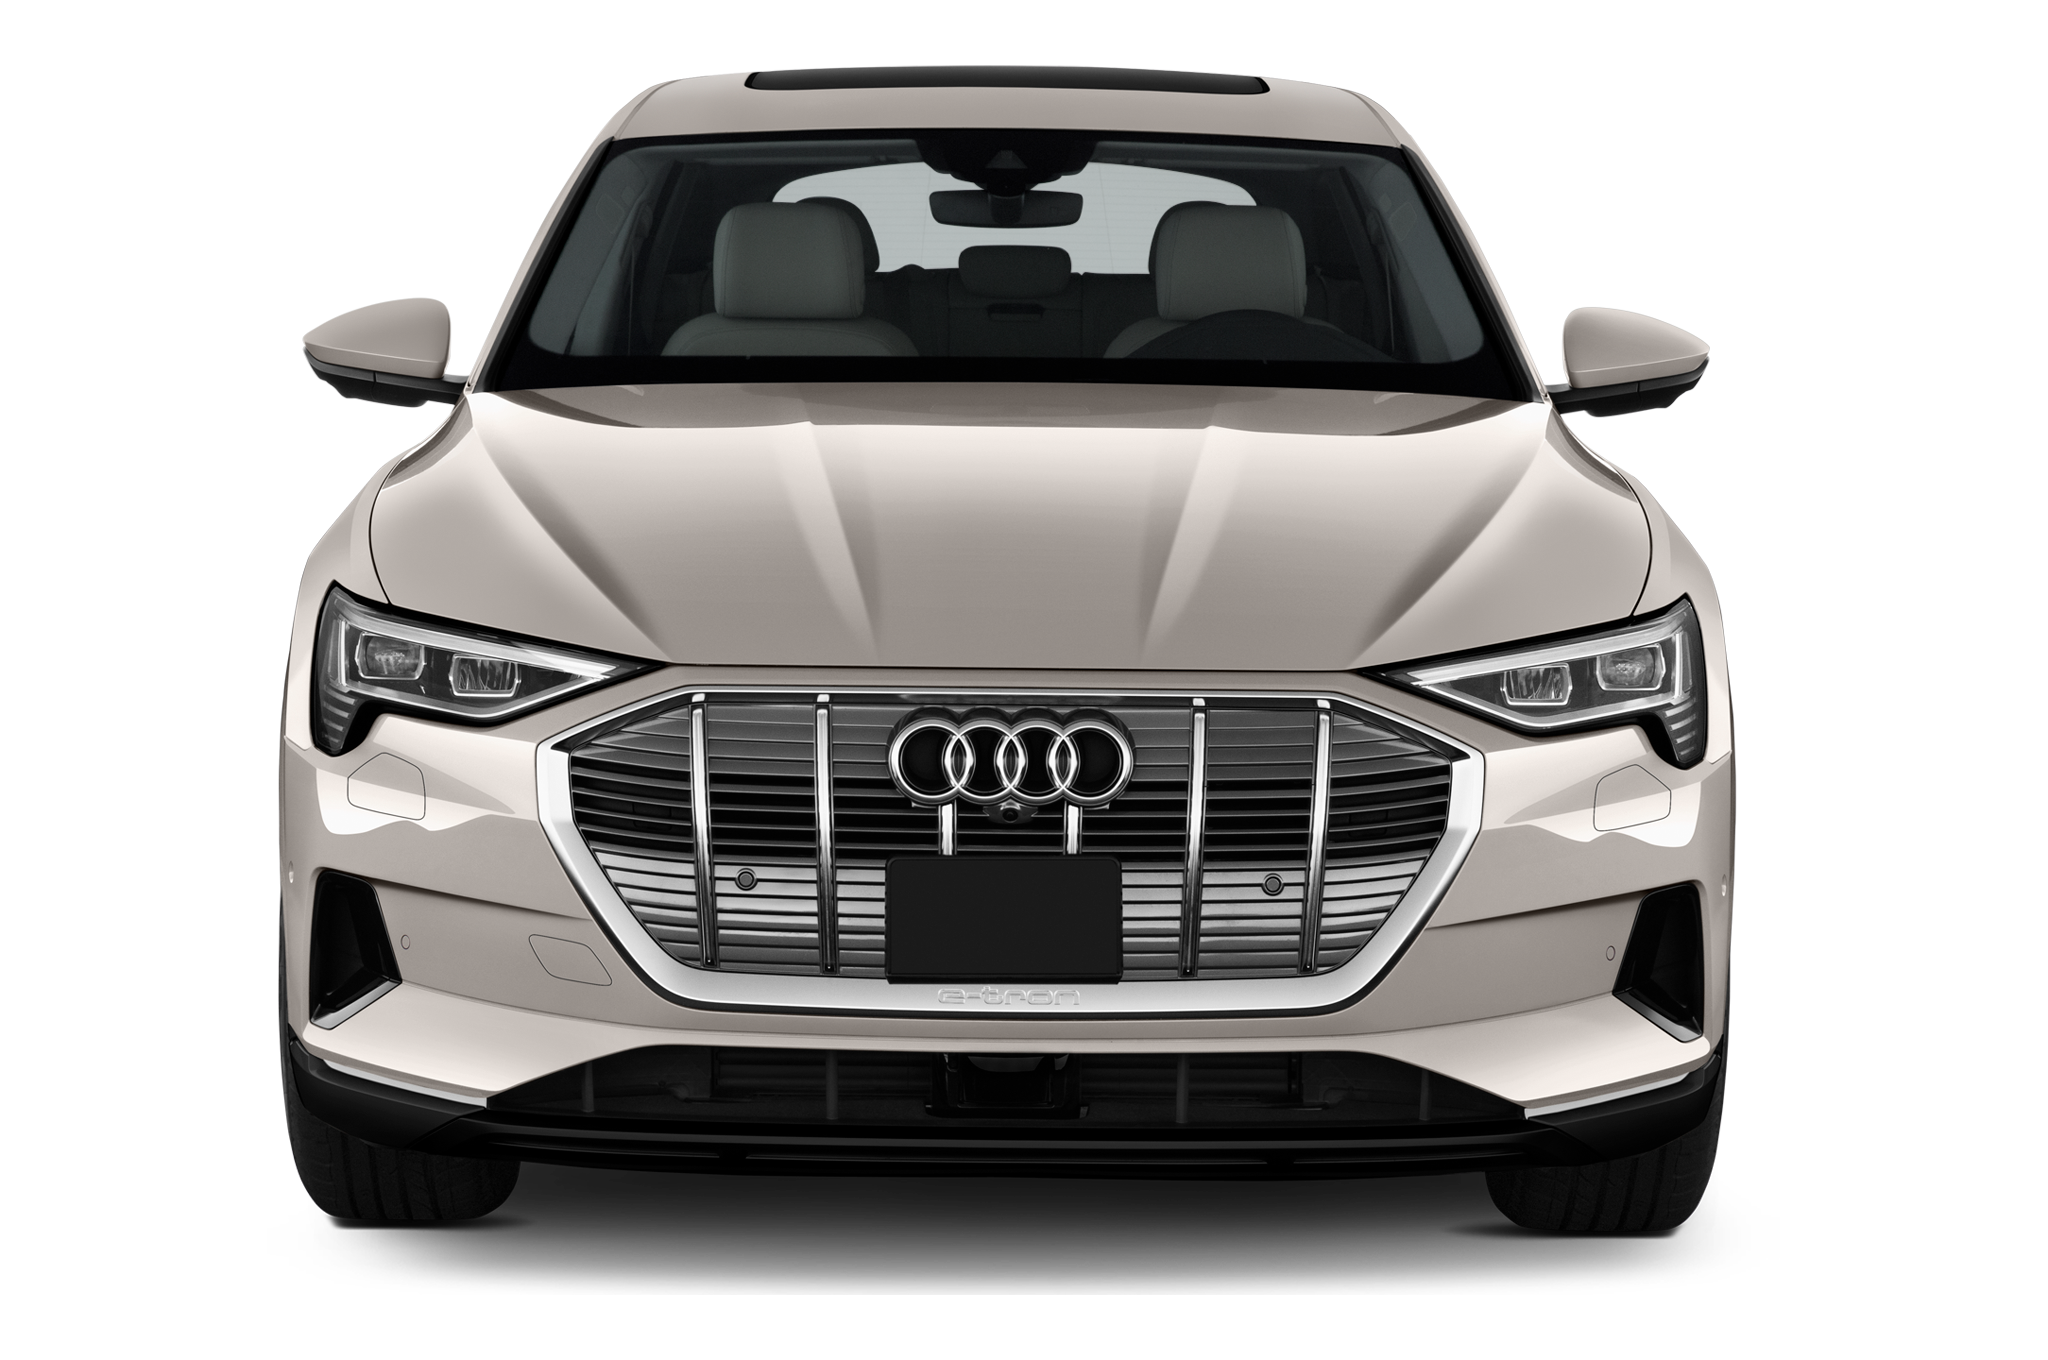 Audi e-tron (Baujahr 2019) - 5 Türen Frontansicht